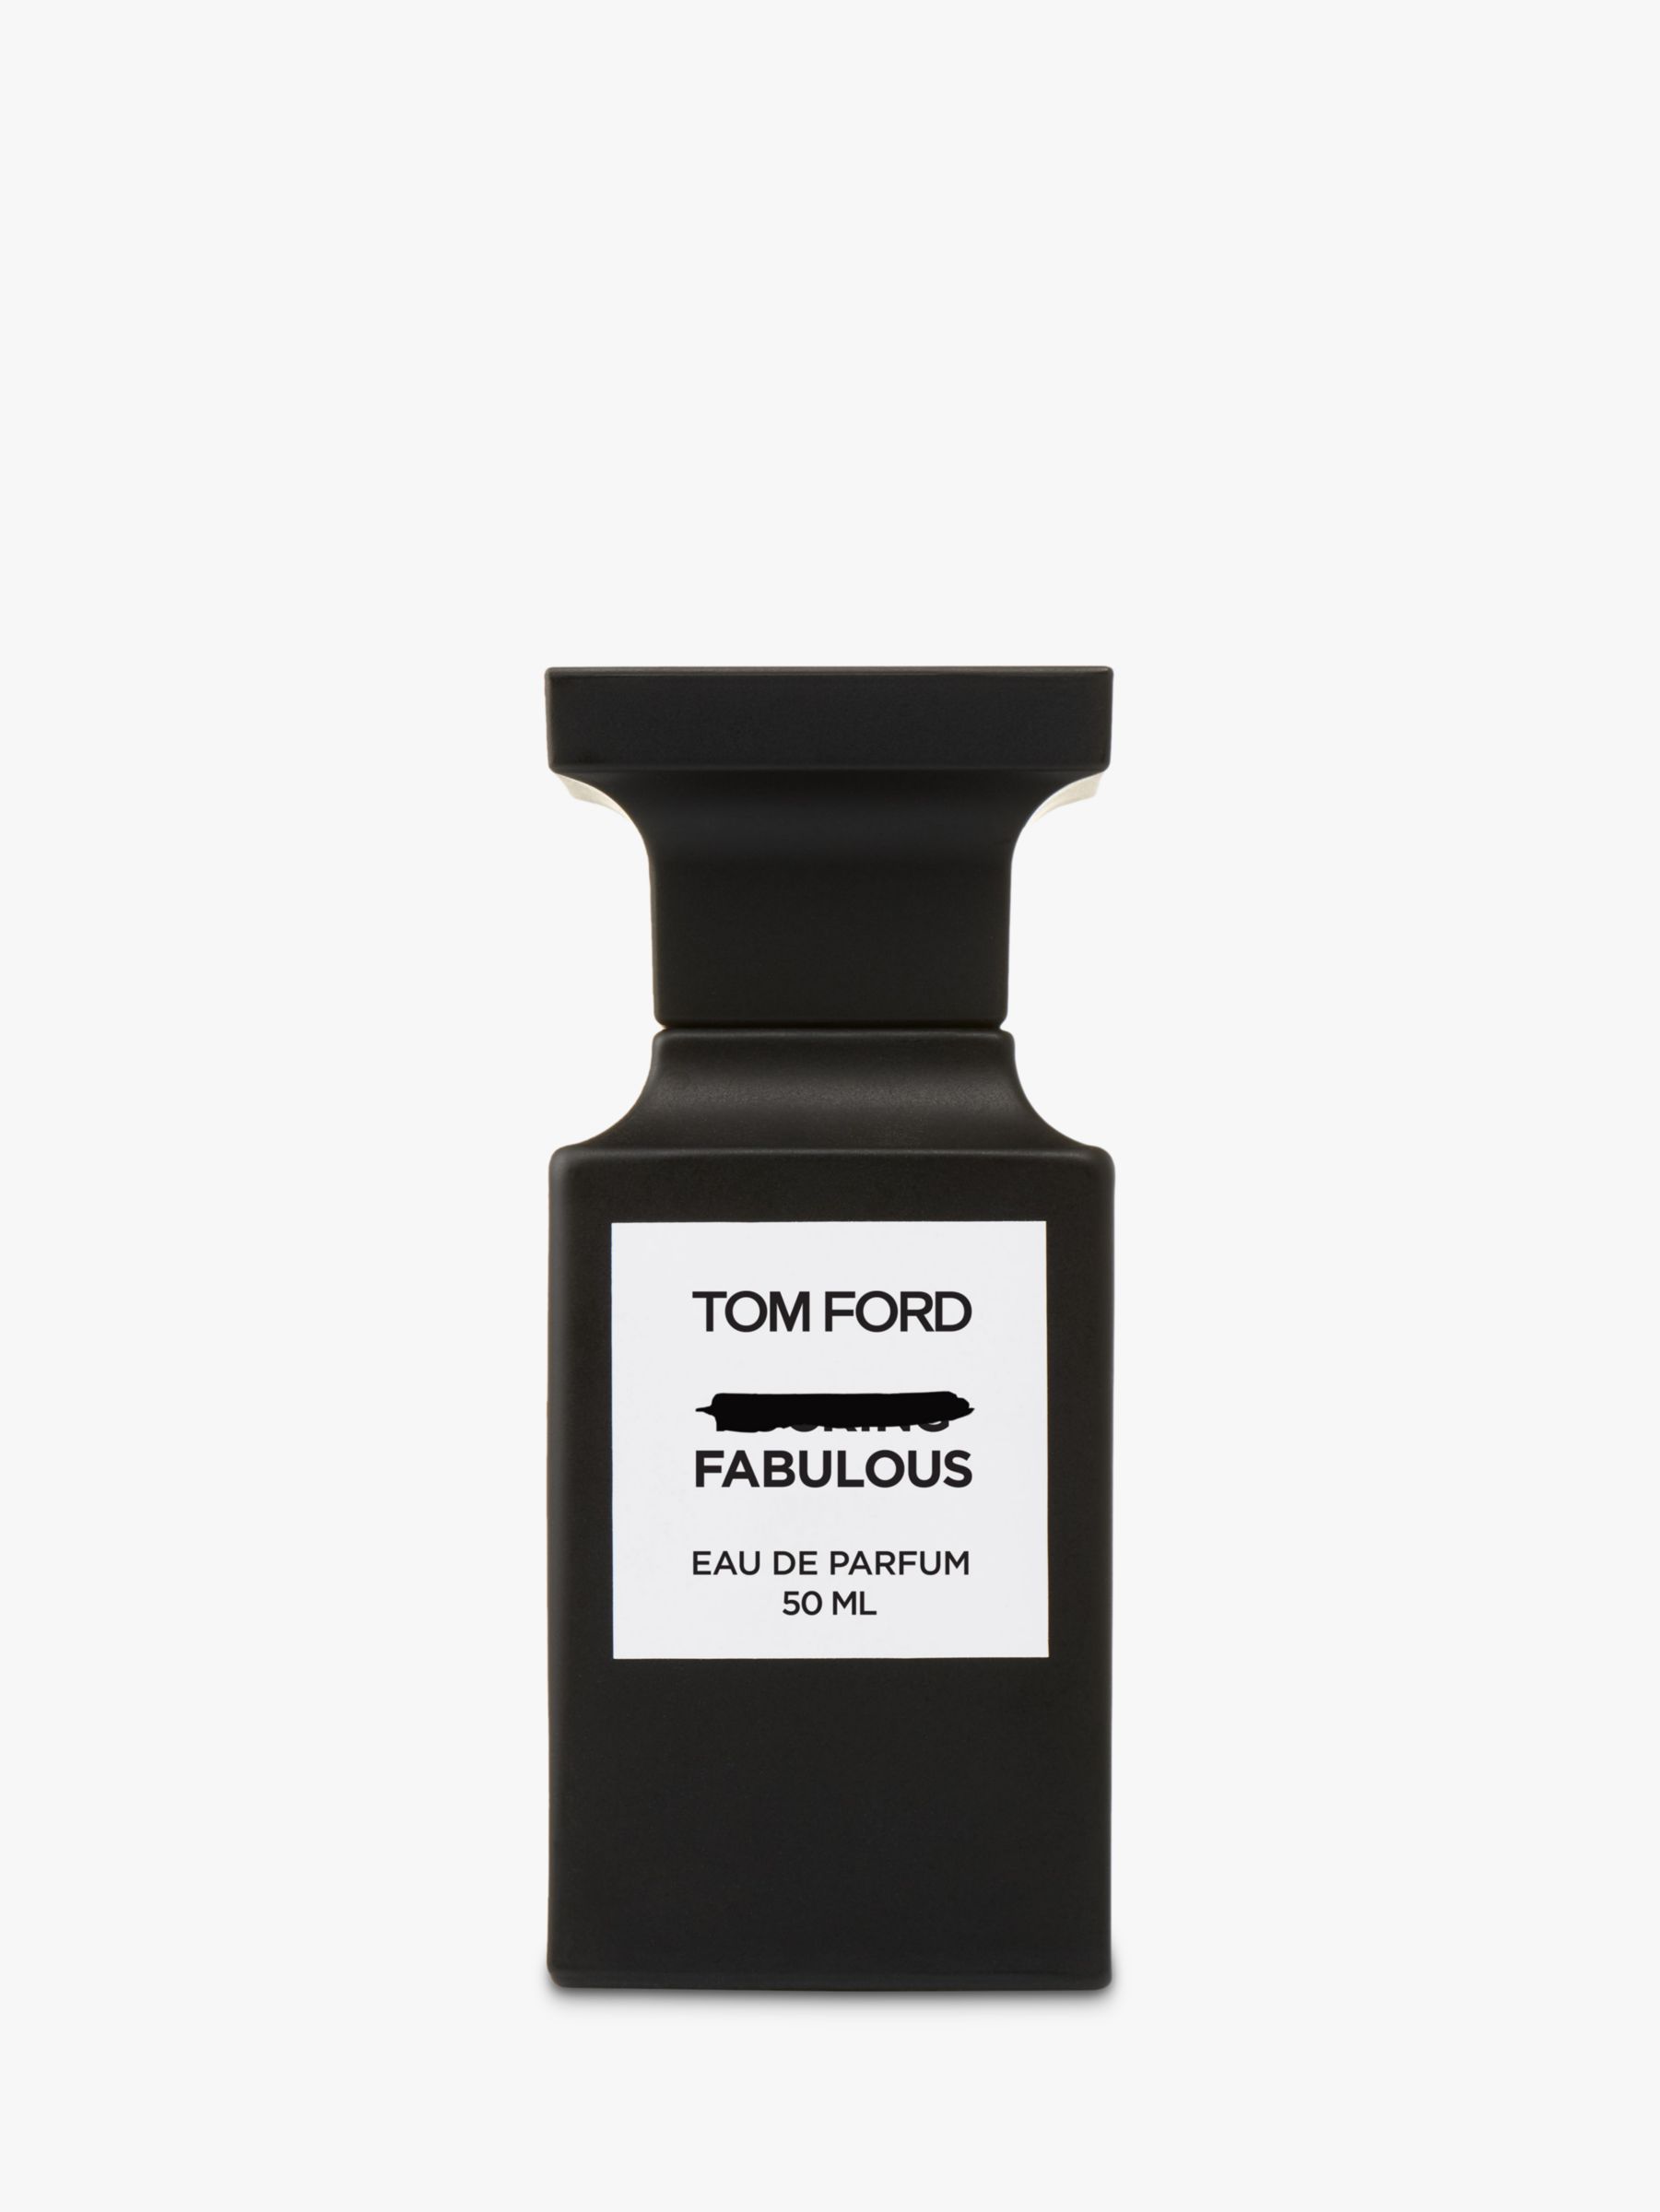 TOM FORD Private Blend Fabulous Eau de Parfum, 50ml